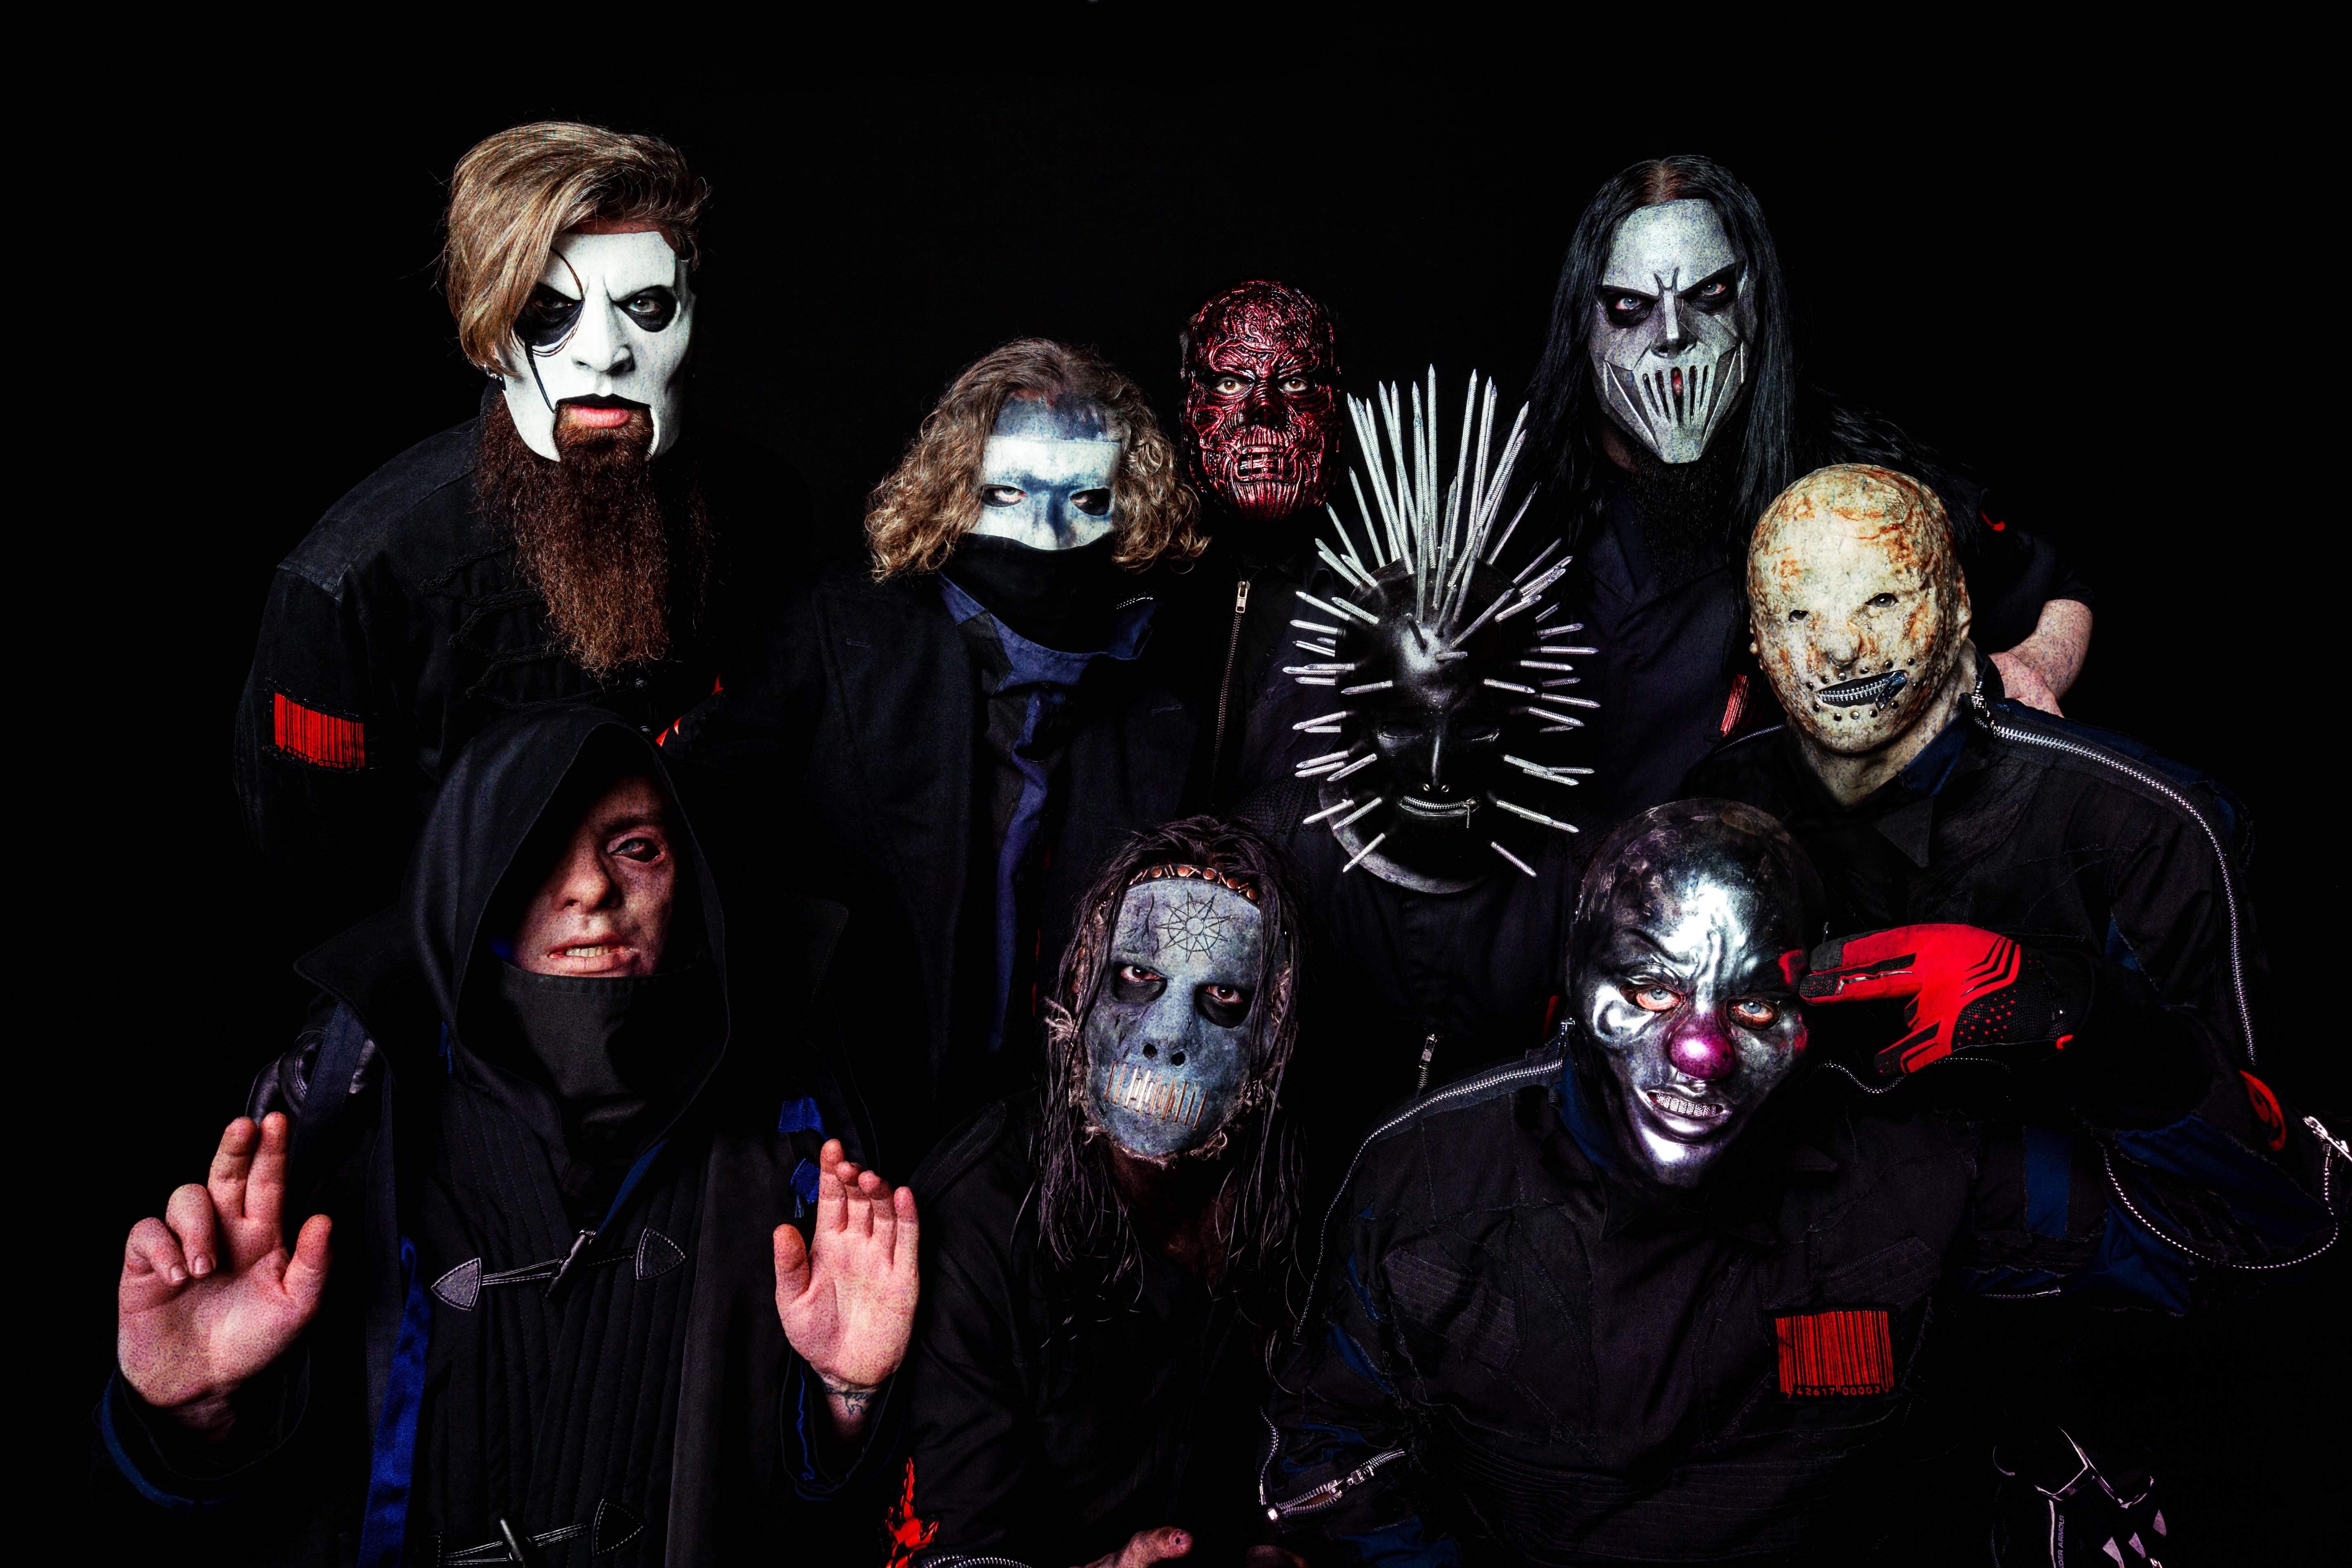 毎日バンドを辞めることを考えてる」Slipknot ジム・ルート interview